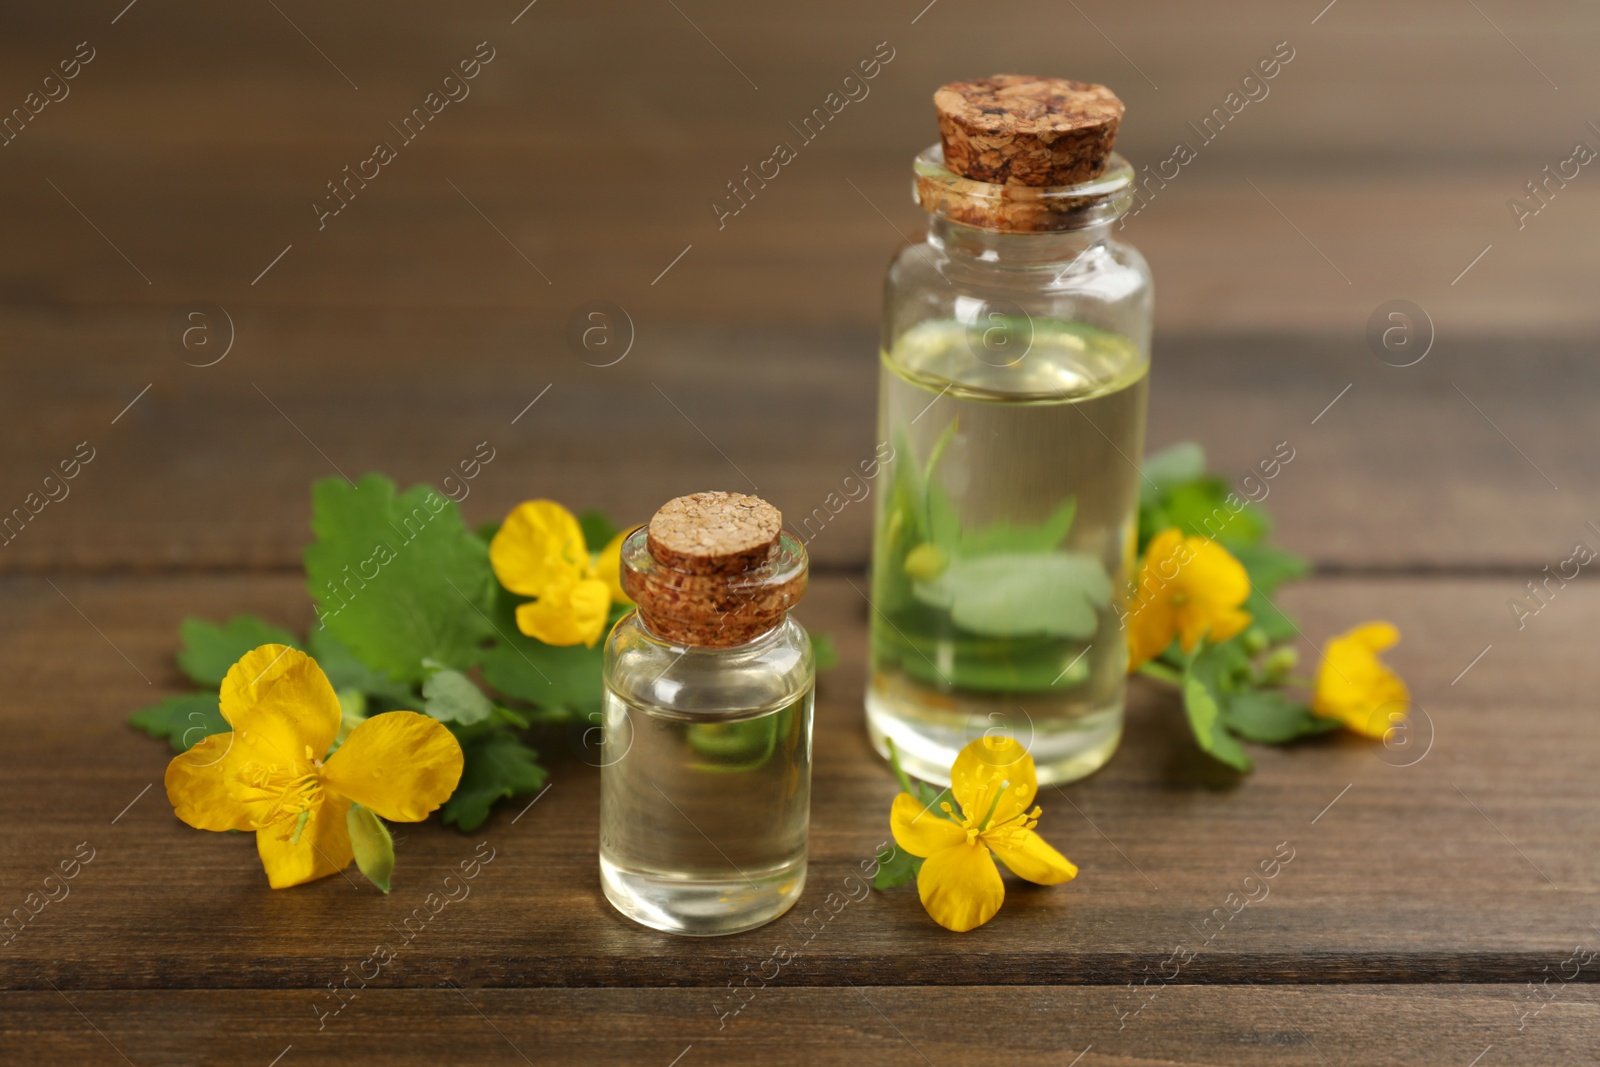 Photo of Bottles of natural celandine oil near flowers on wooden table